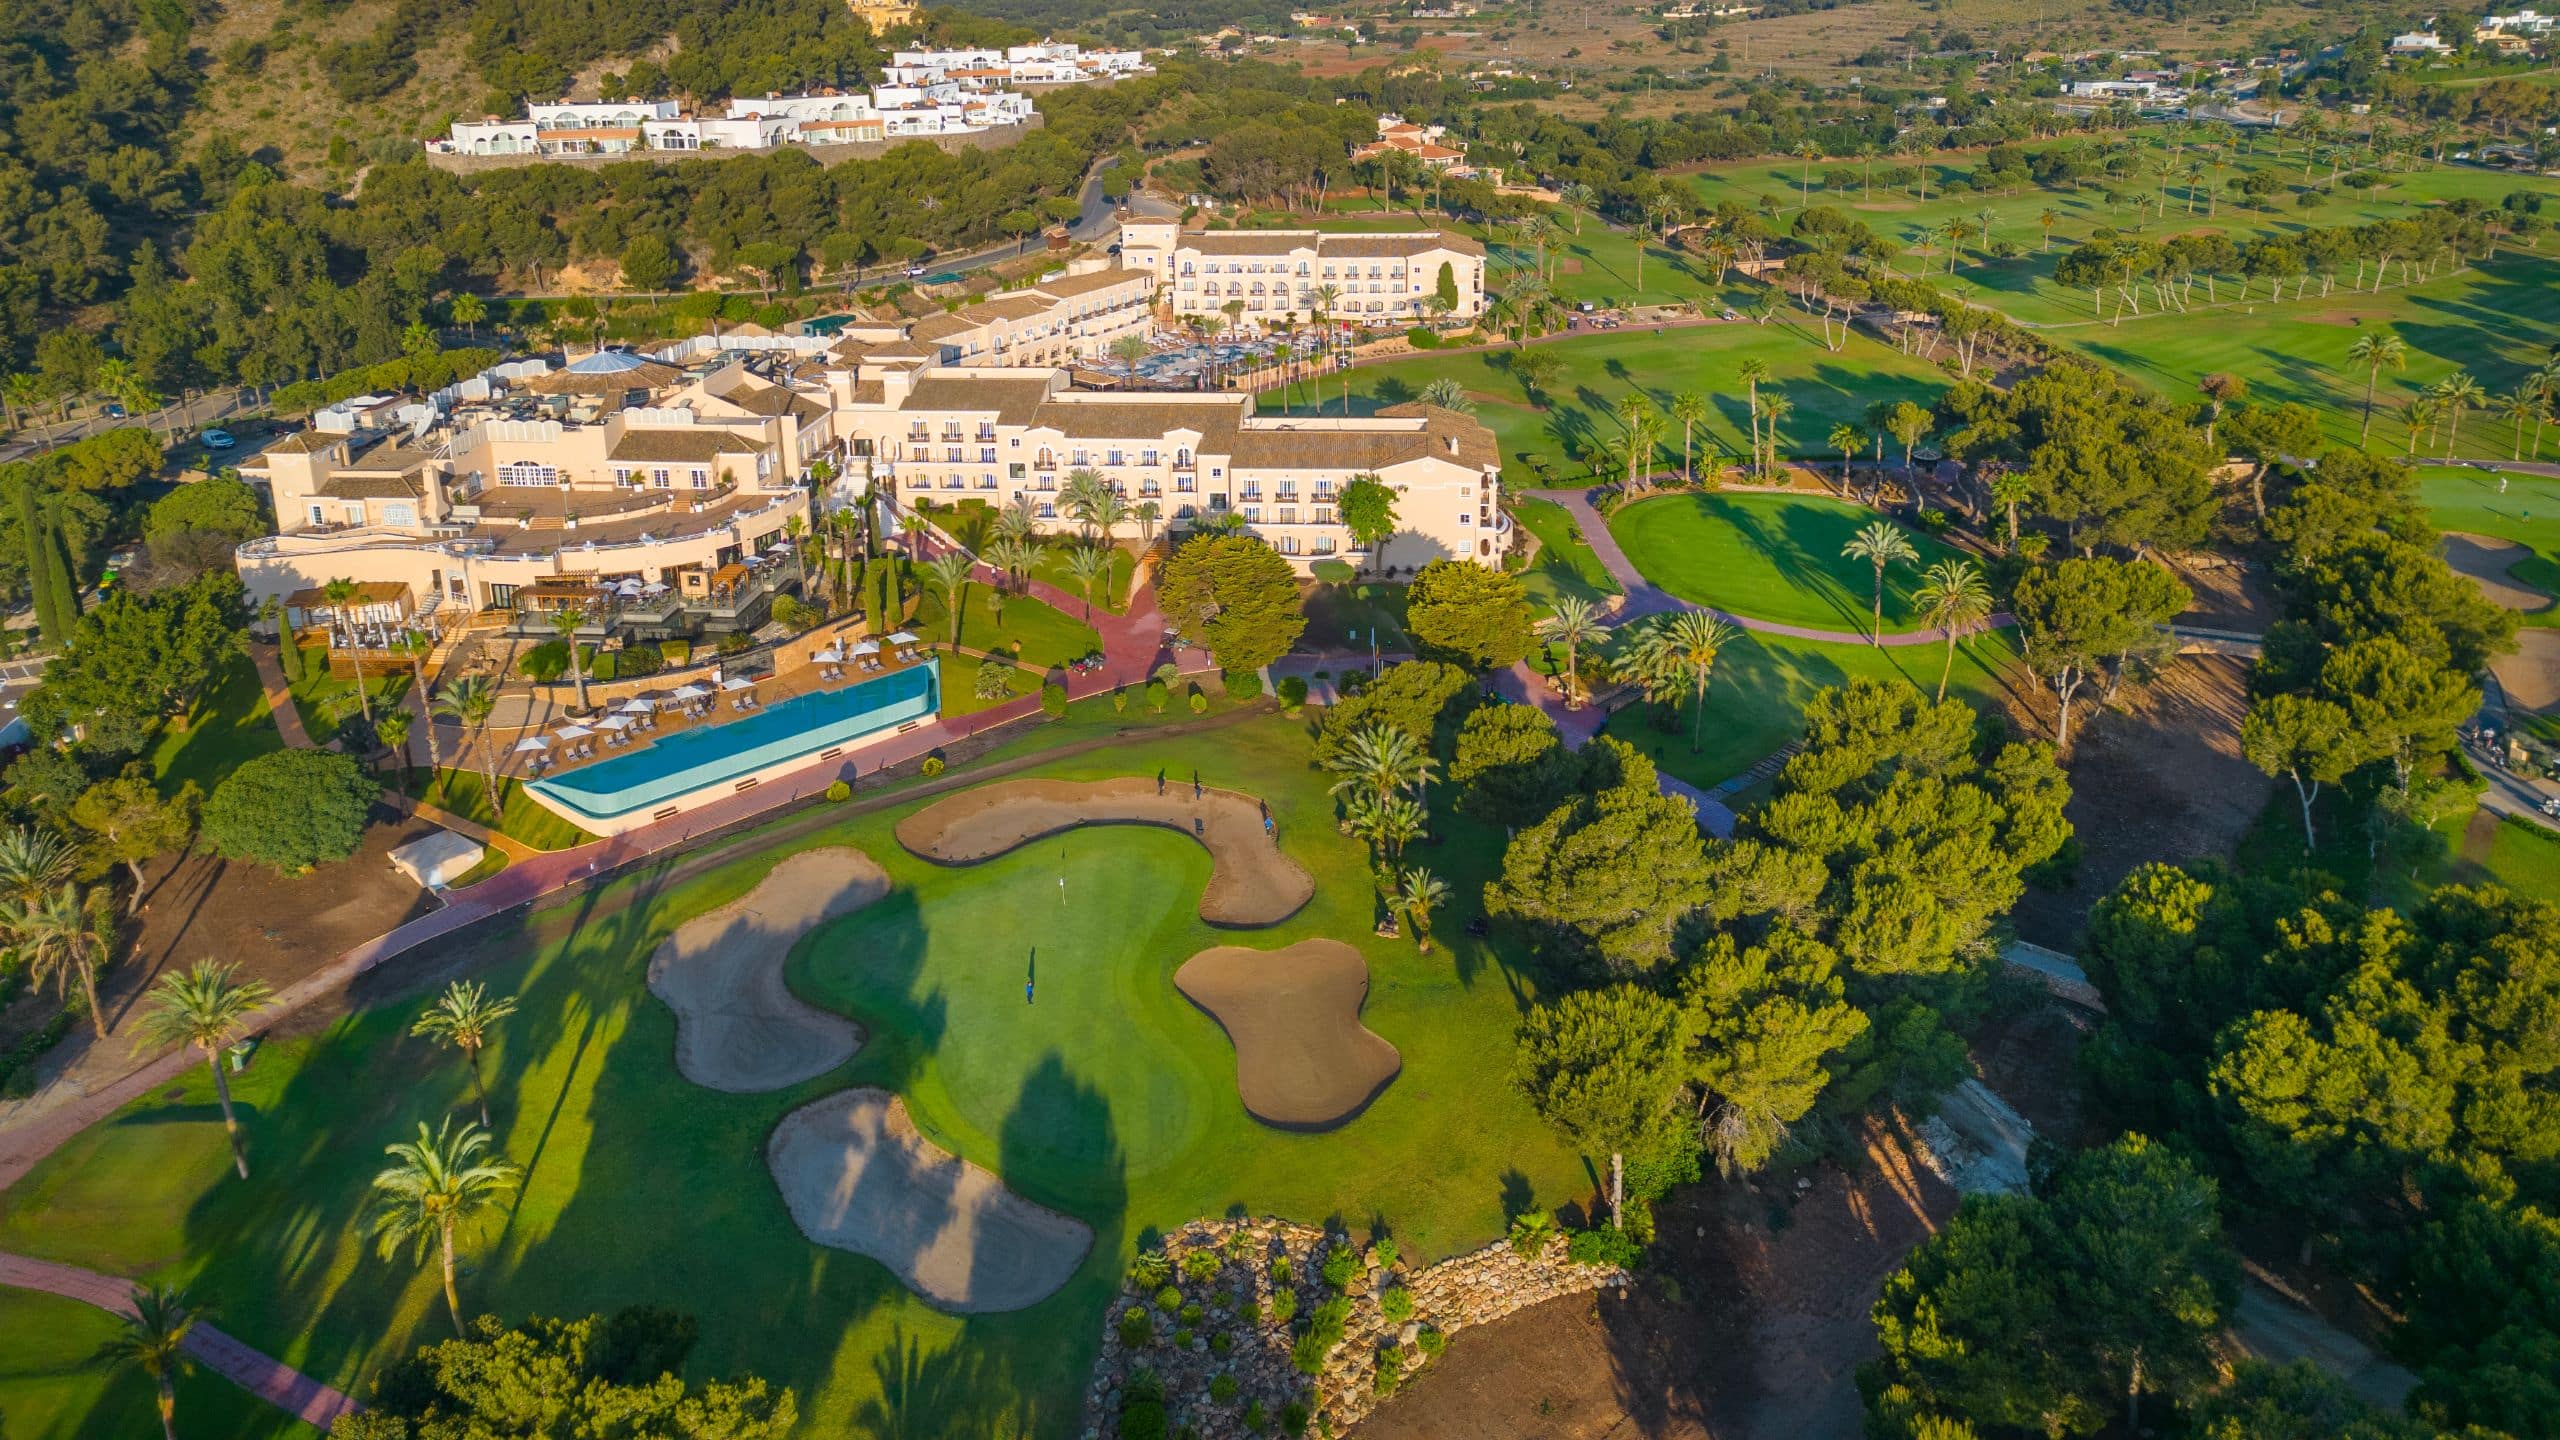 Grand Hyatt La Manga Club Golf & Spa Exterior Aerial View